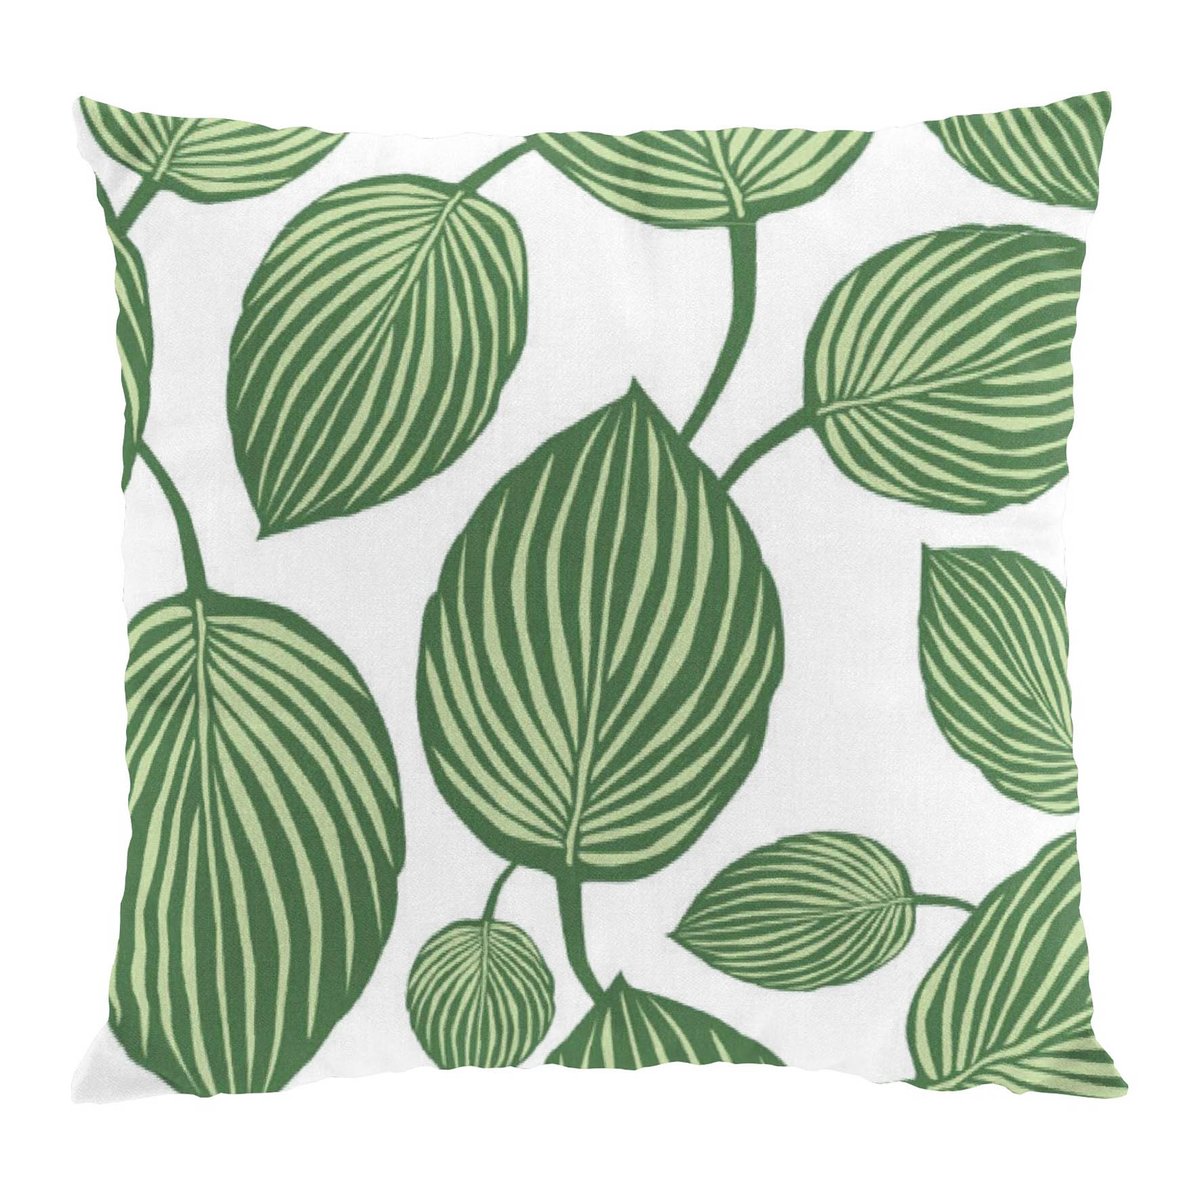 Arvidssons Textil Lyckans blad tyynynpäällinen 45×45 cm vihreä